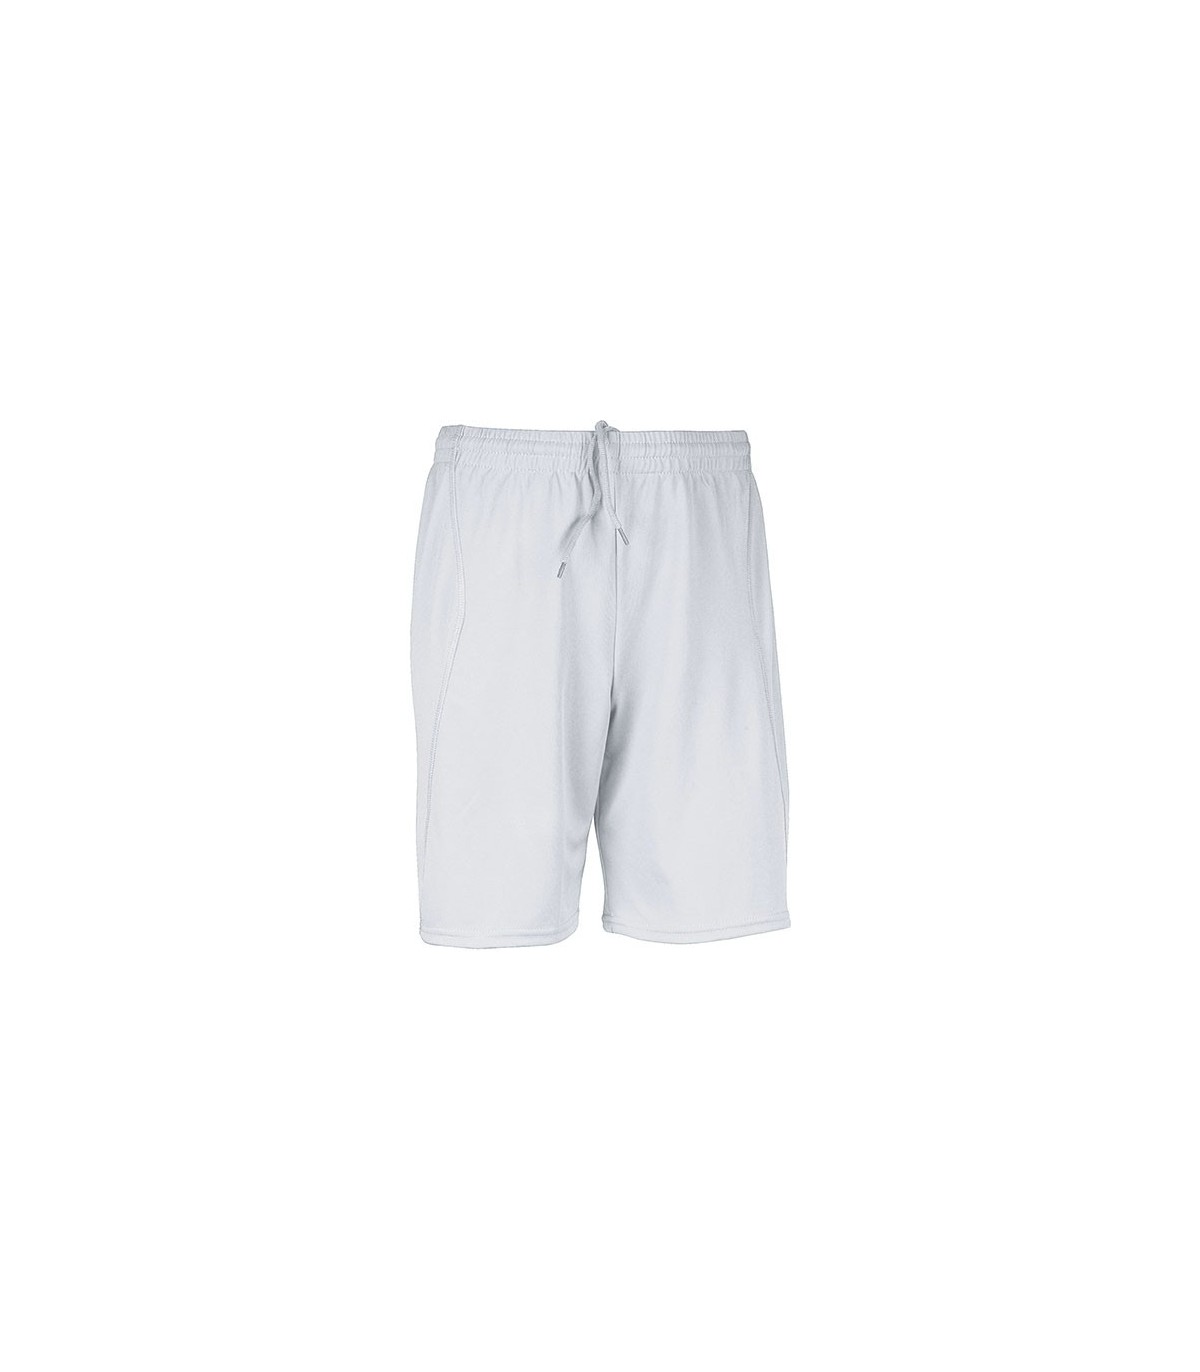 Kids Sport Shorts - White